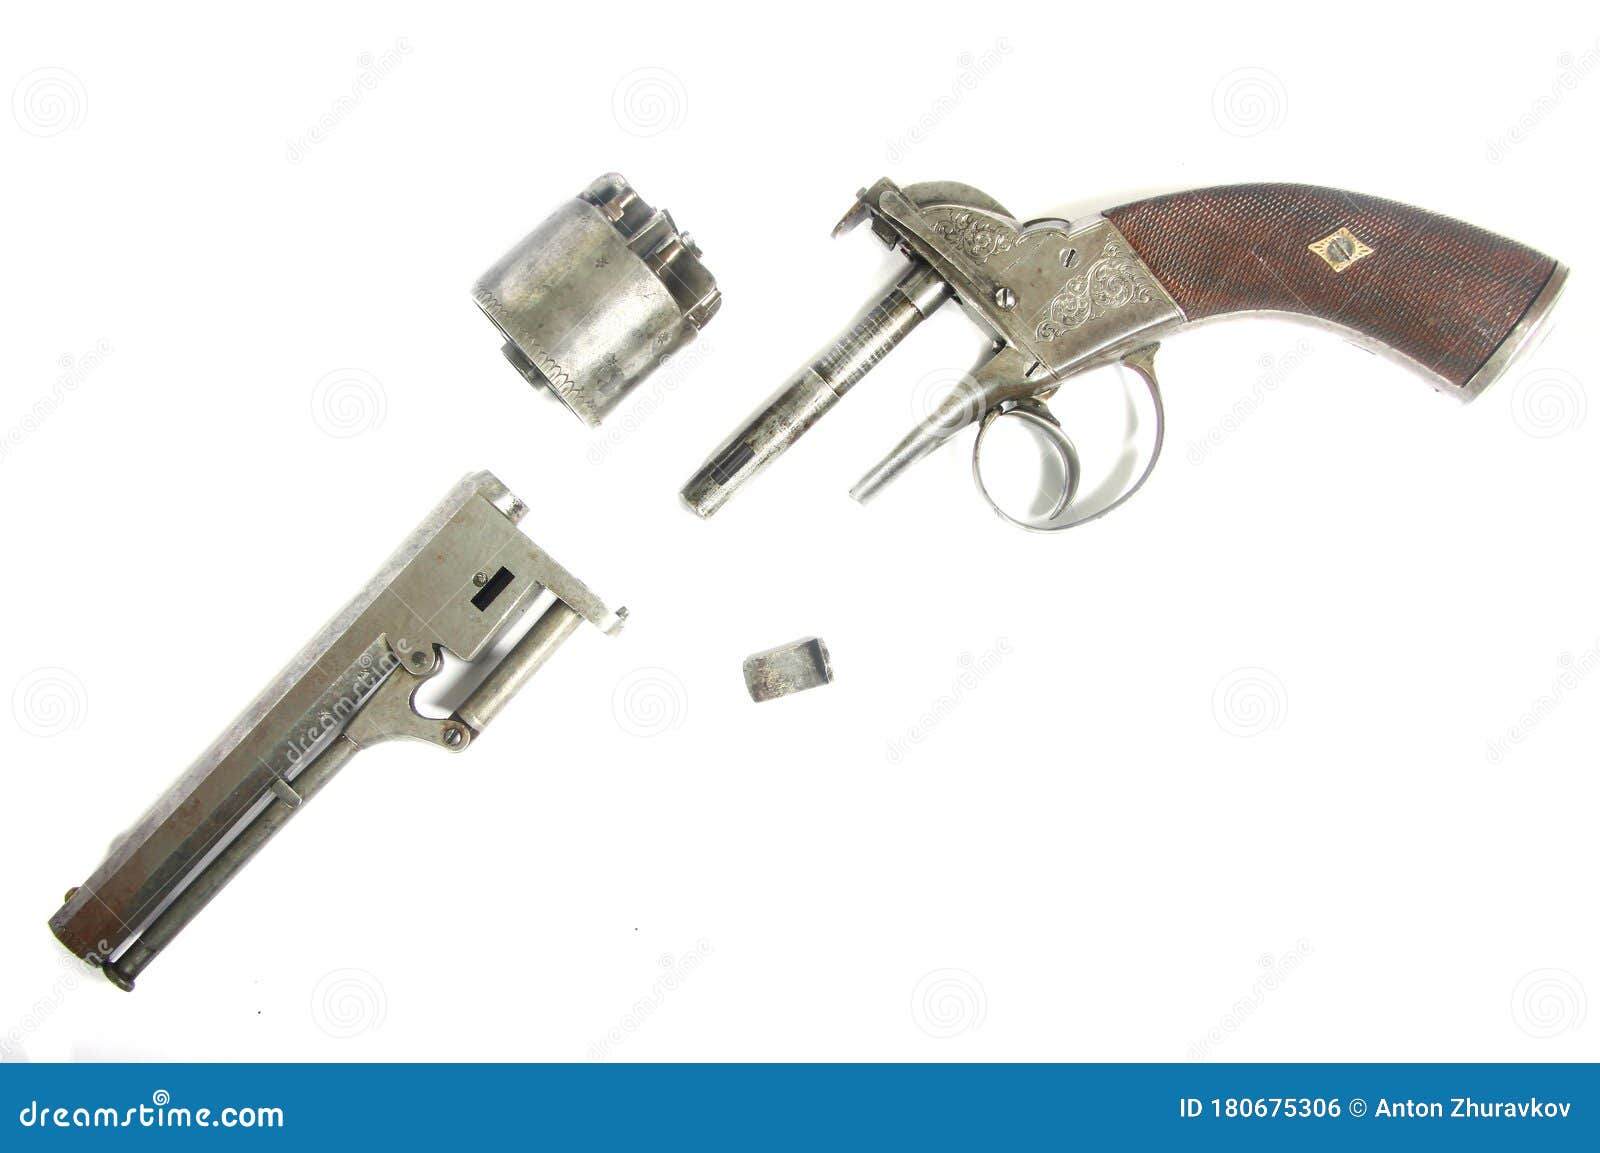 xix century old rare muzzle loading percussion cap revolver pistol